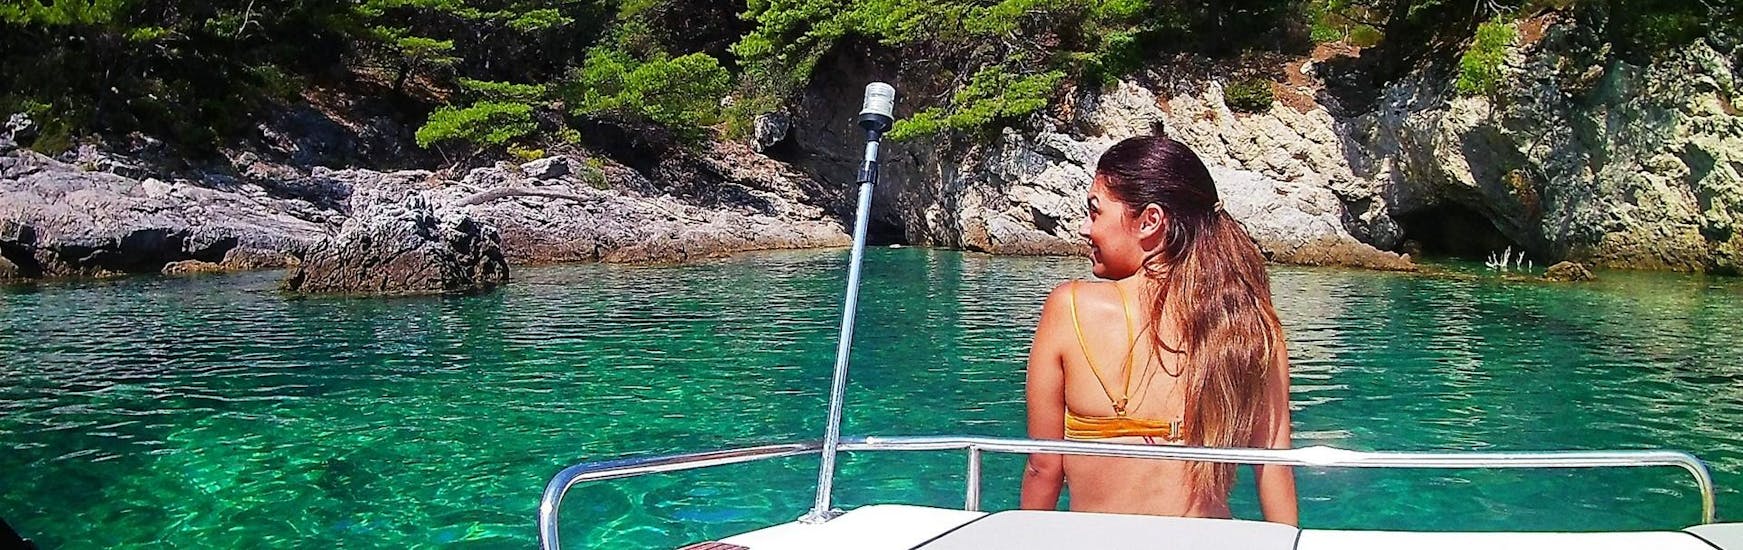 Vrouw op de boeg van de boot tijdens een tour georganiseerd door Snooky Tours Dubrovnik.